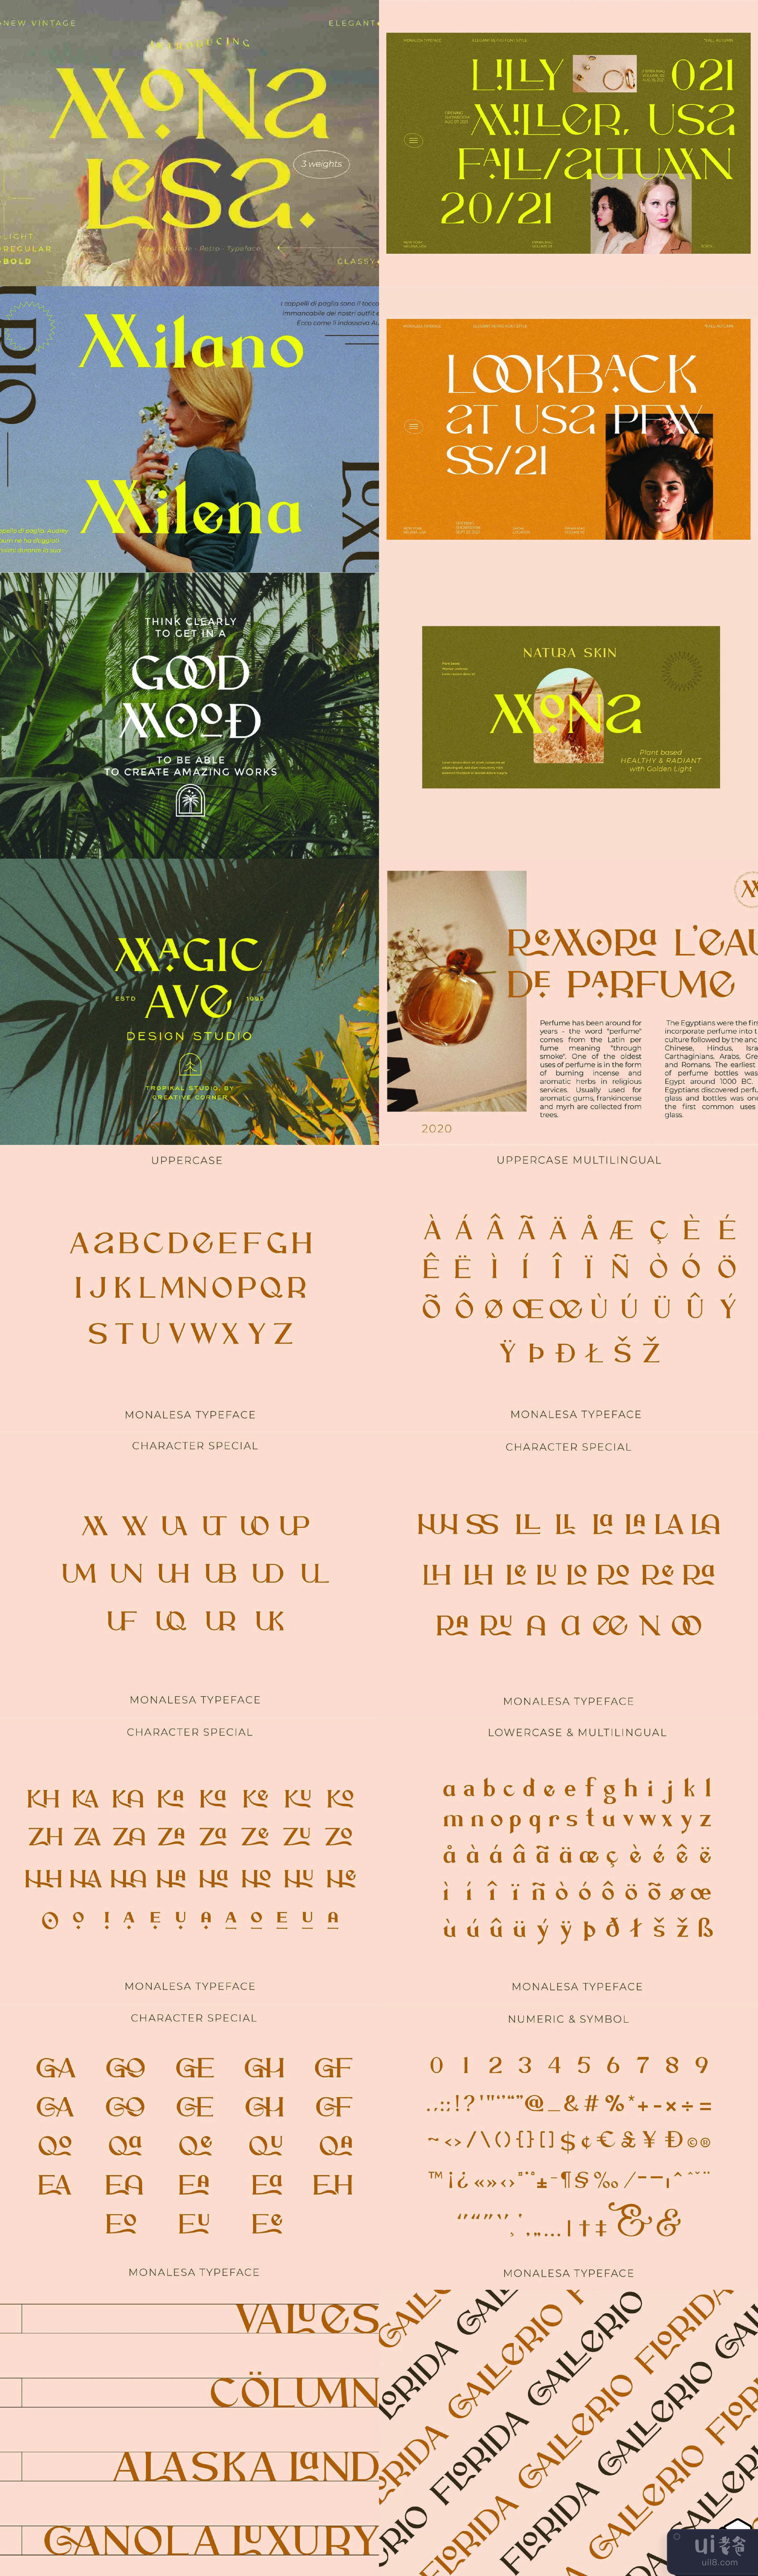 Monalesa - 新的复古字体 (Monalesa - New Vintage Typeface)插图1